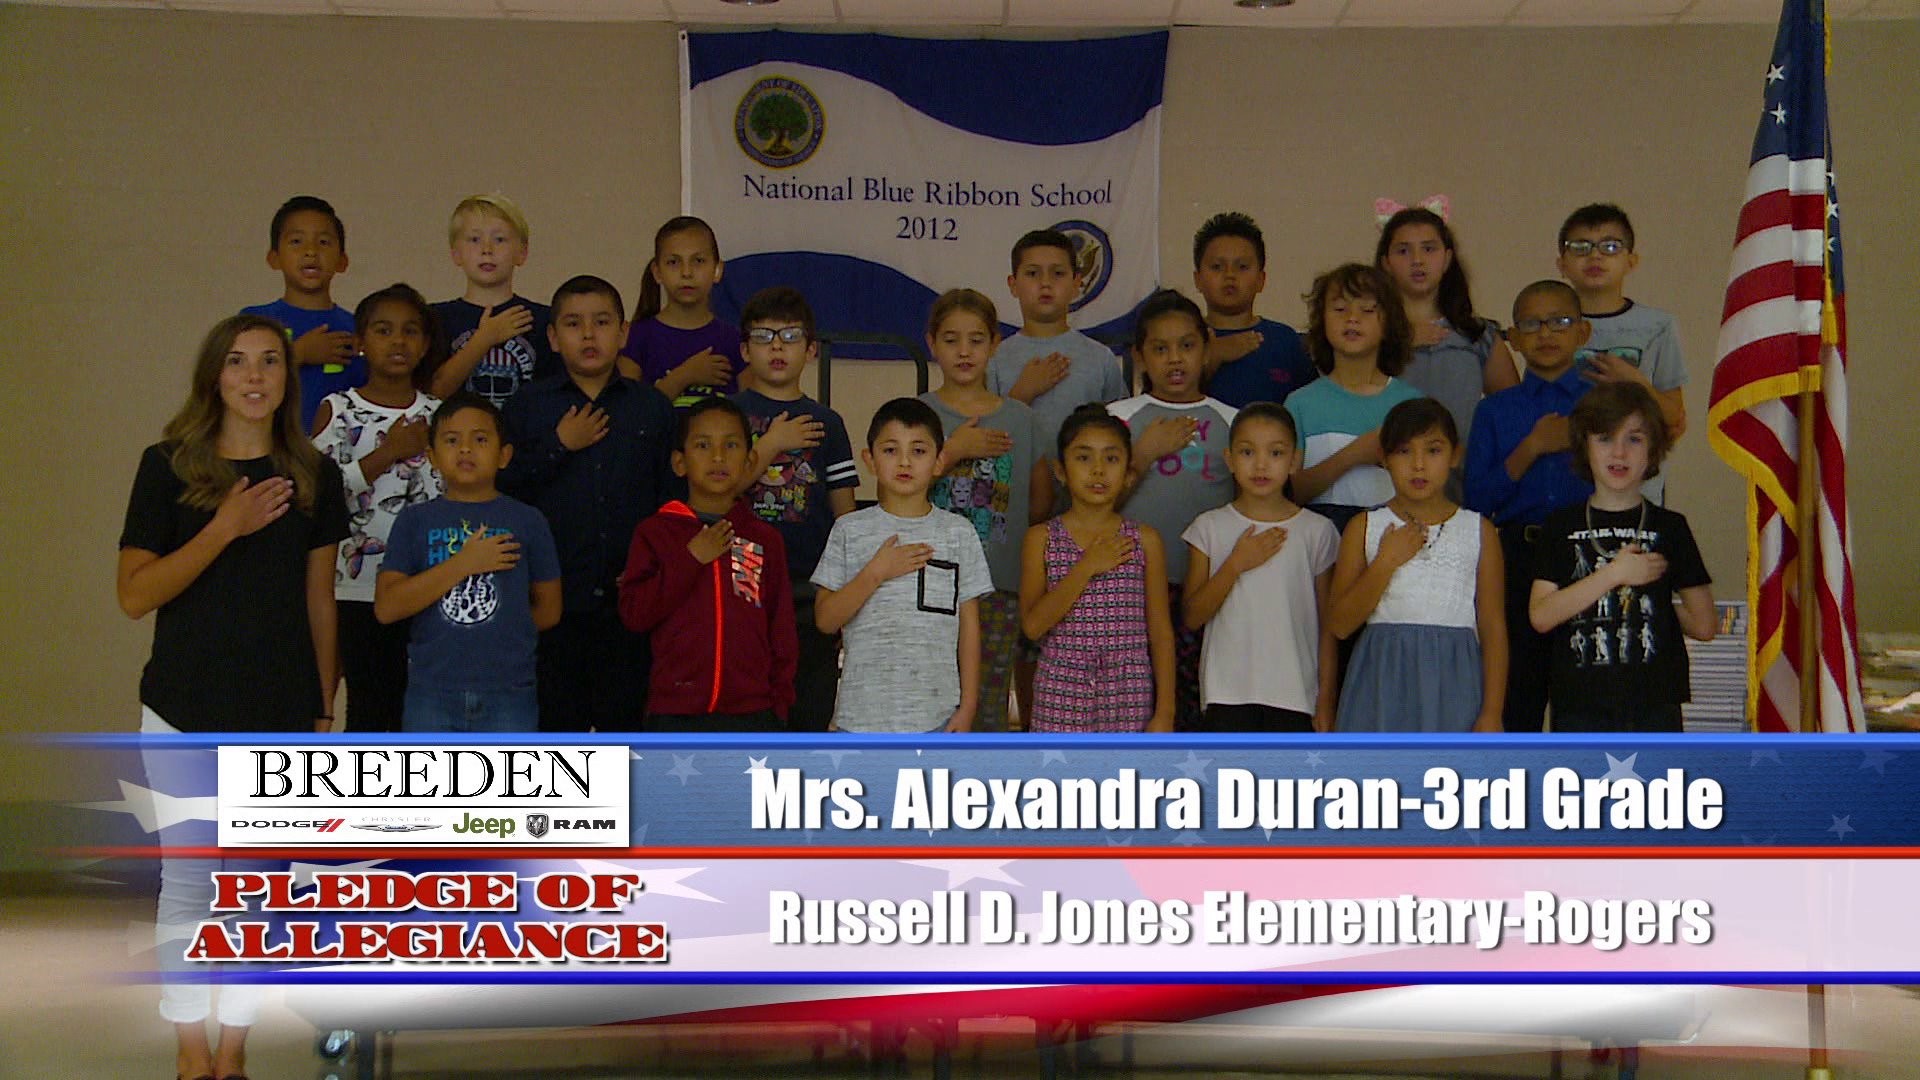 Mrs. Alexandra Duran  3rd Grade Russell D Jones Elementary, Rogers